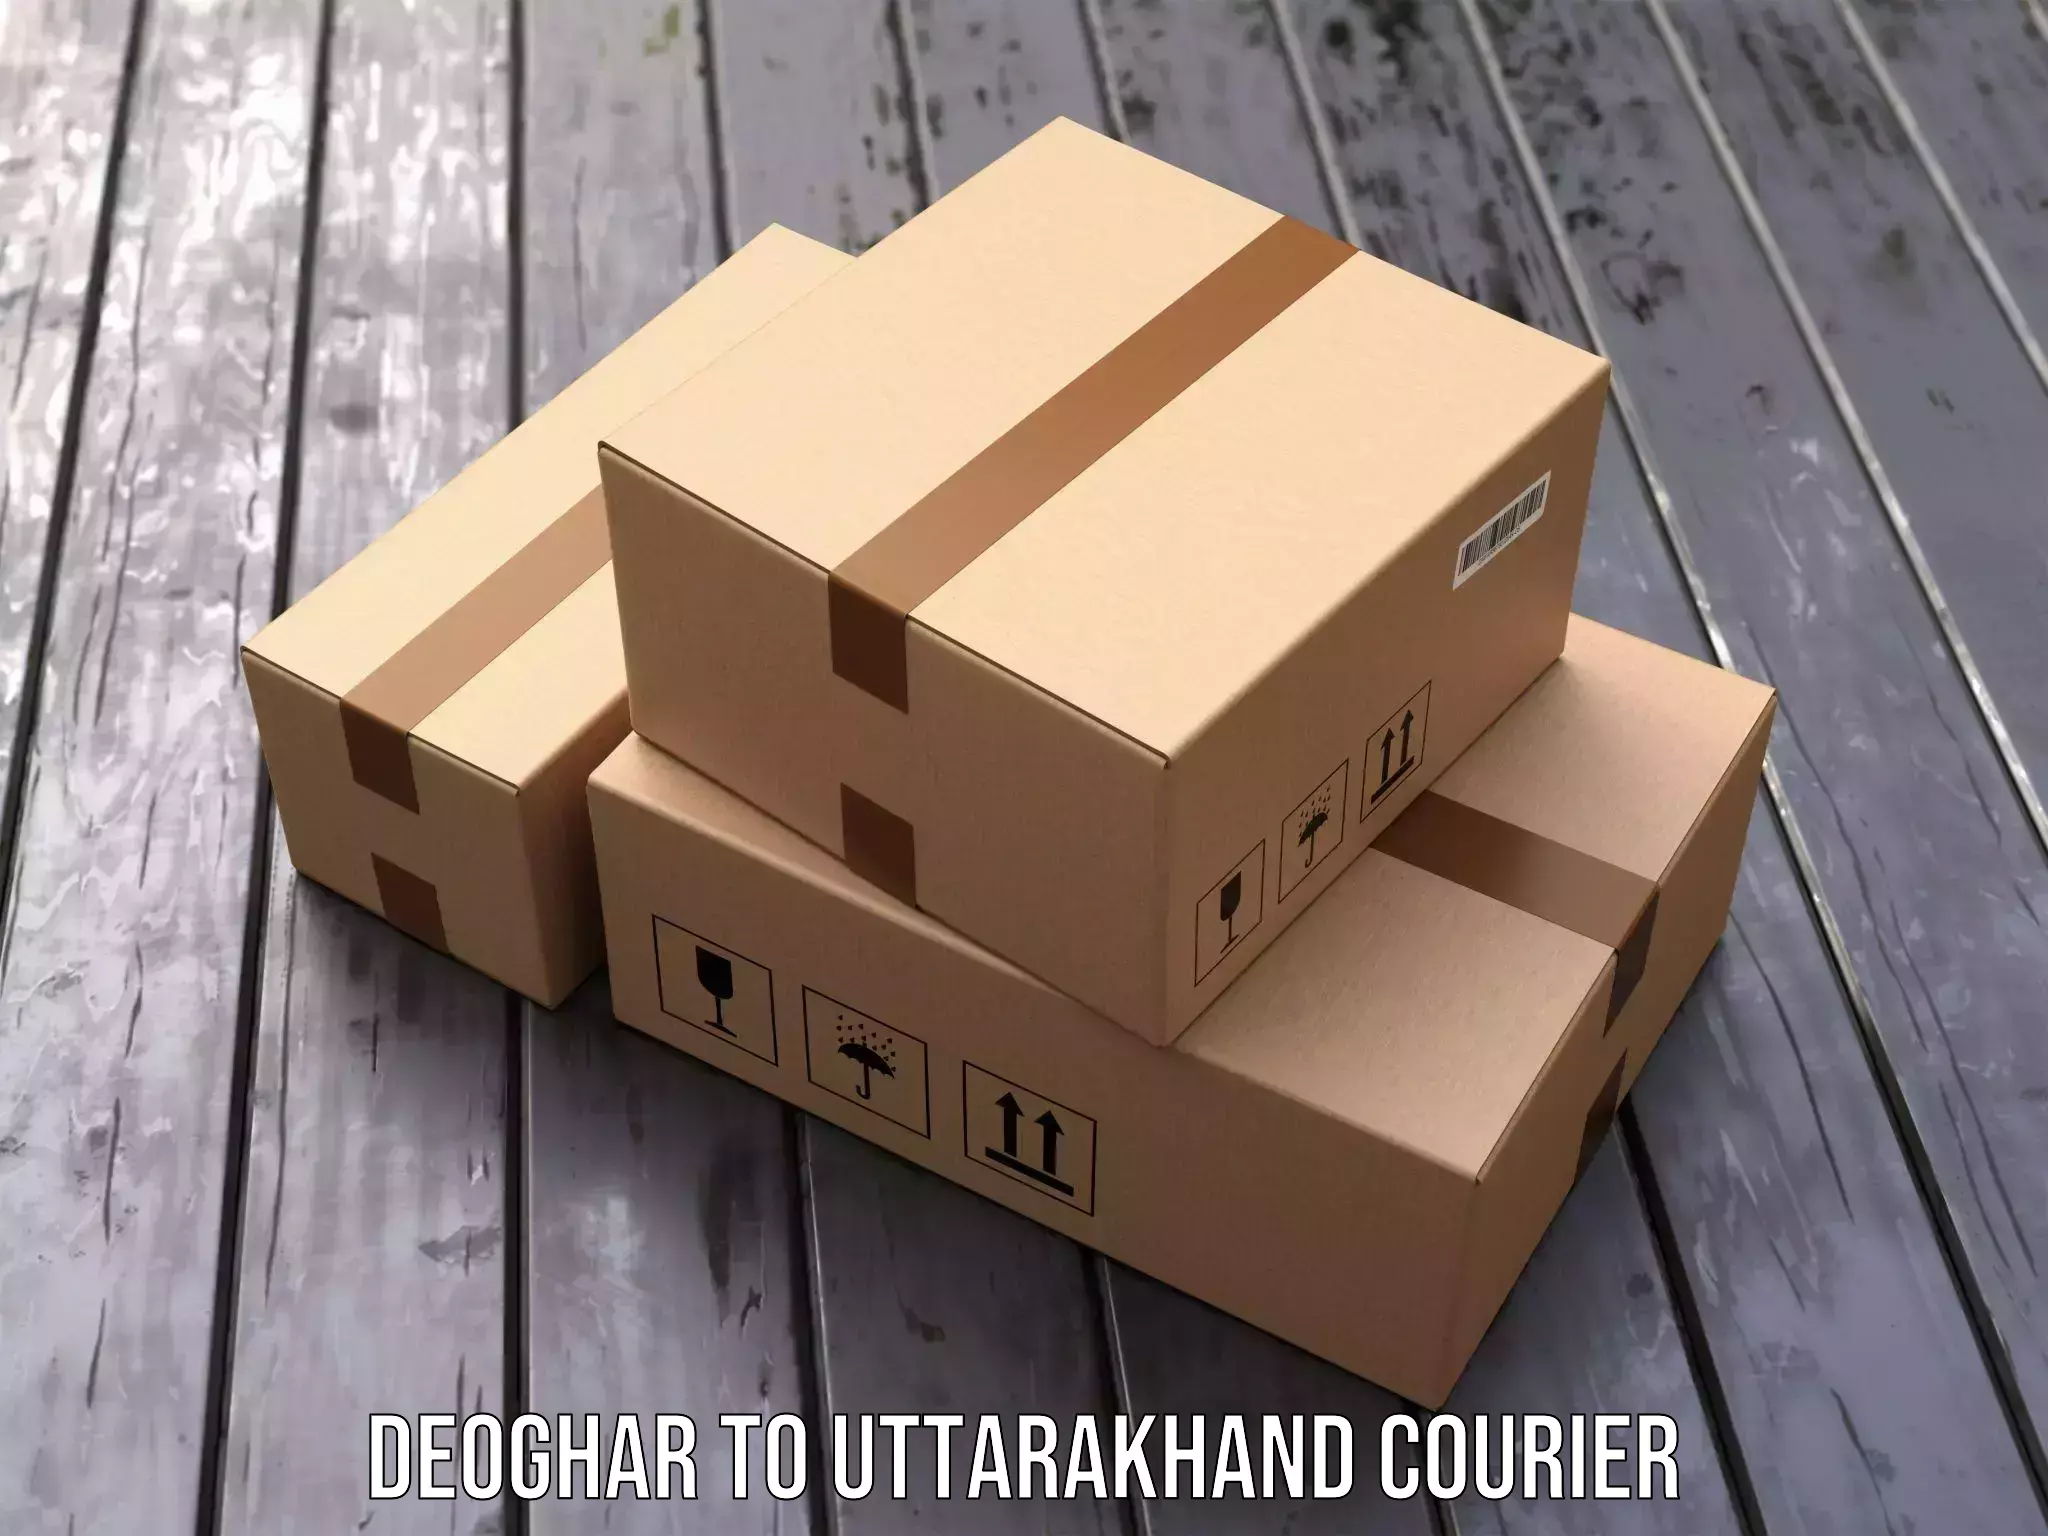 Regular parcel service Deoghar to IIT Roorkee